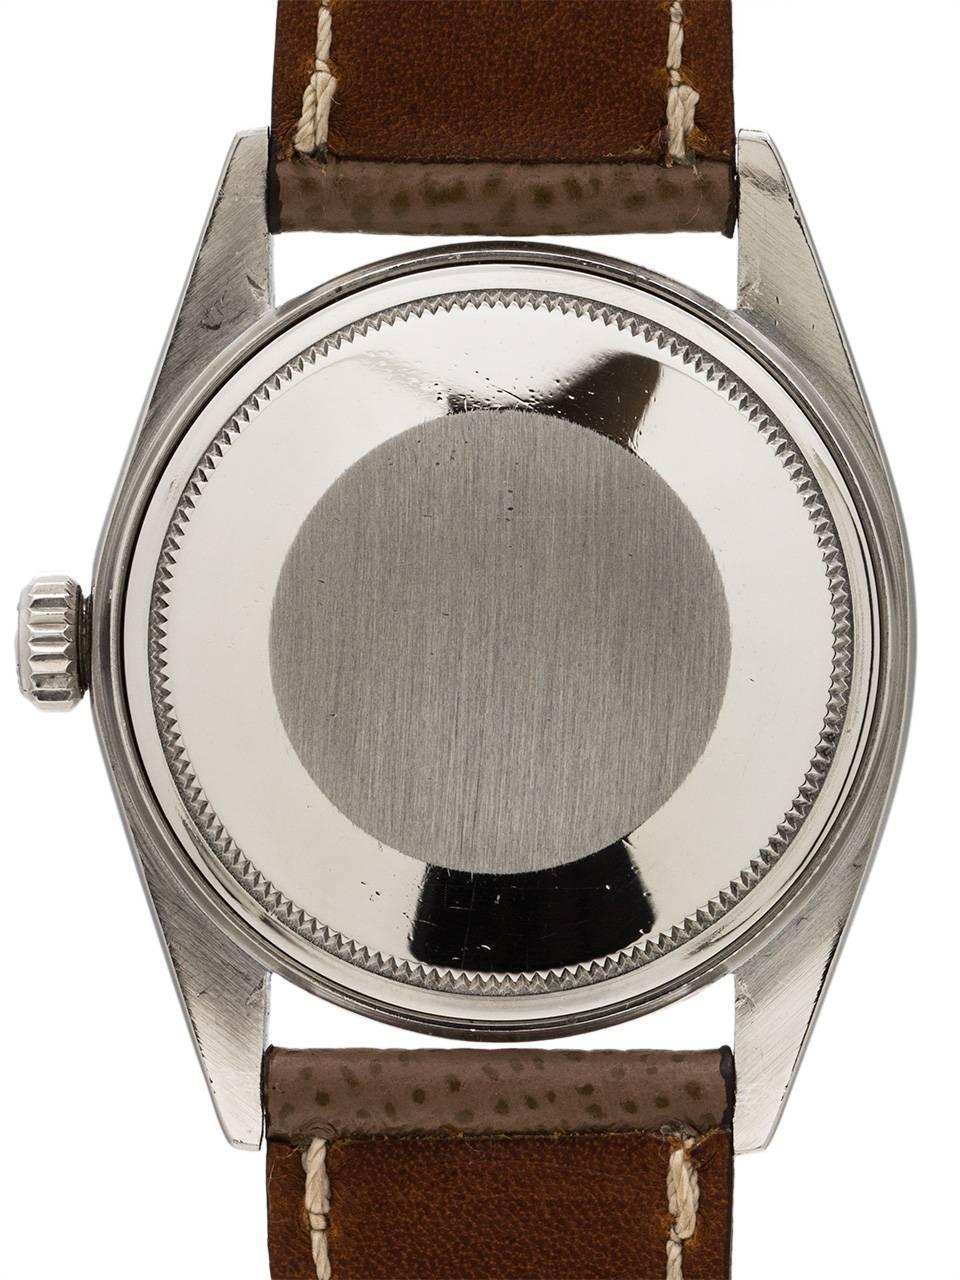 Men's Rolex White Gold Stainless Steel Datejust Wide Boy Wristwatch, circa 1974